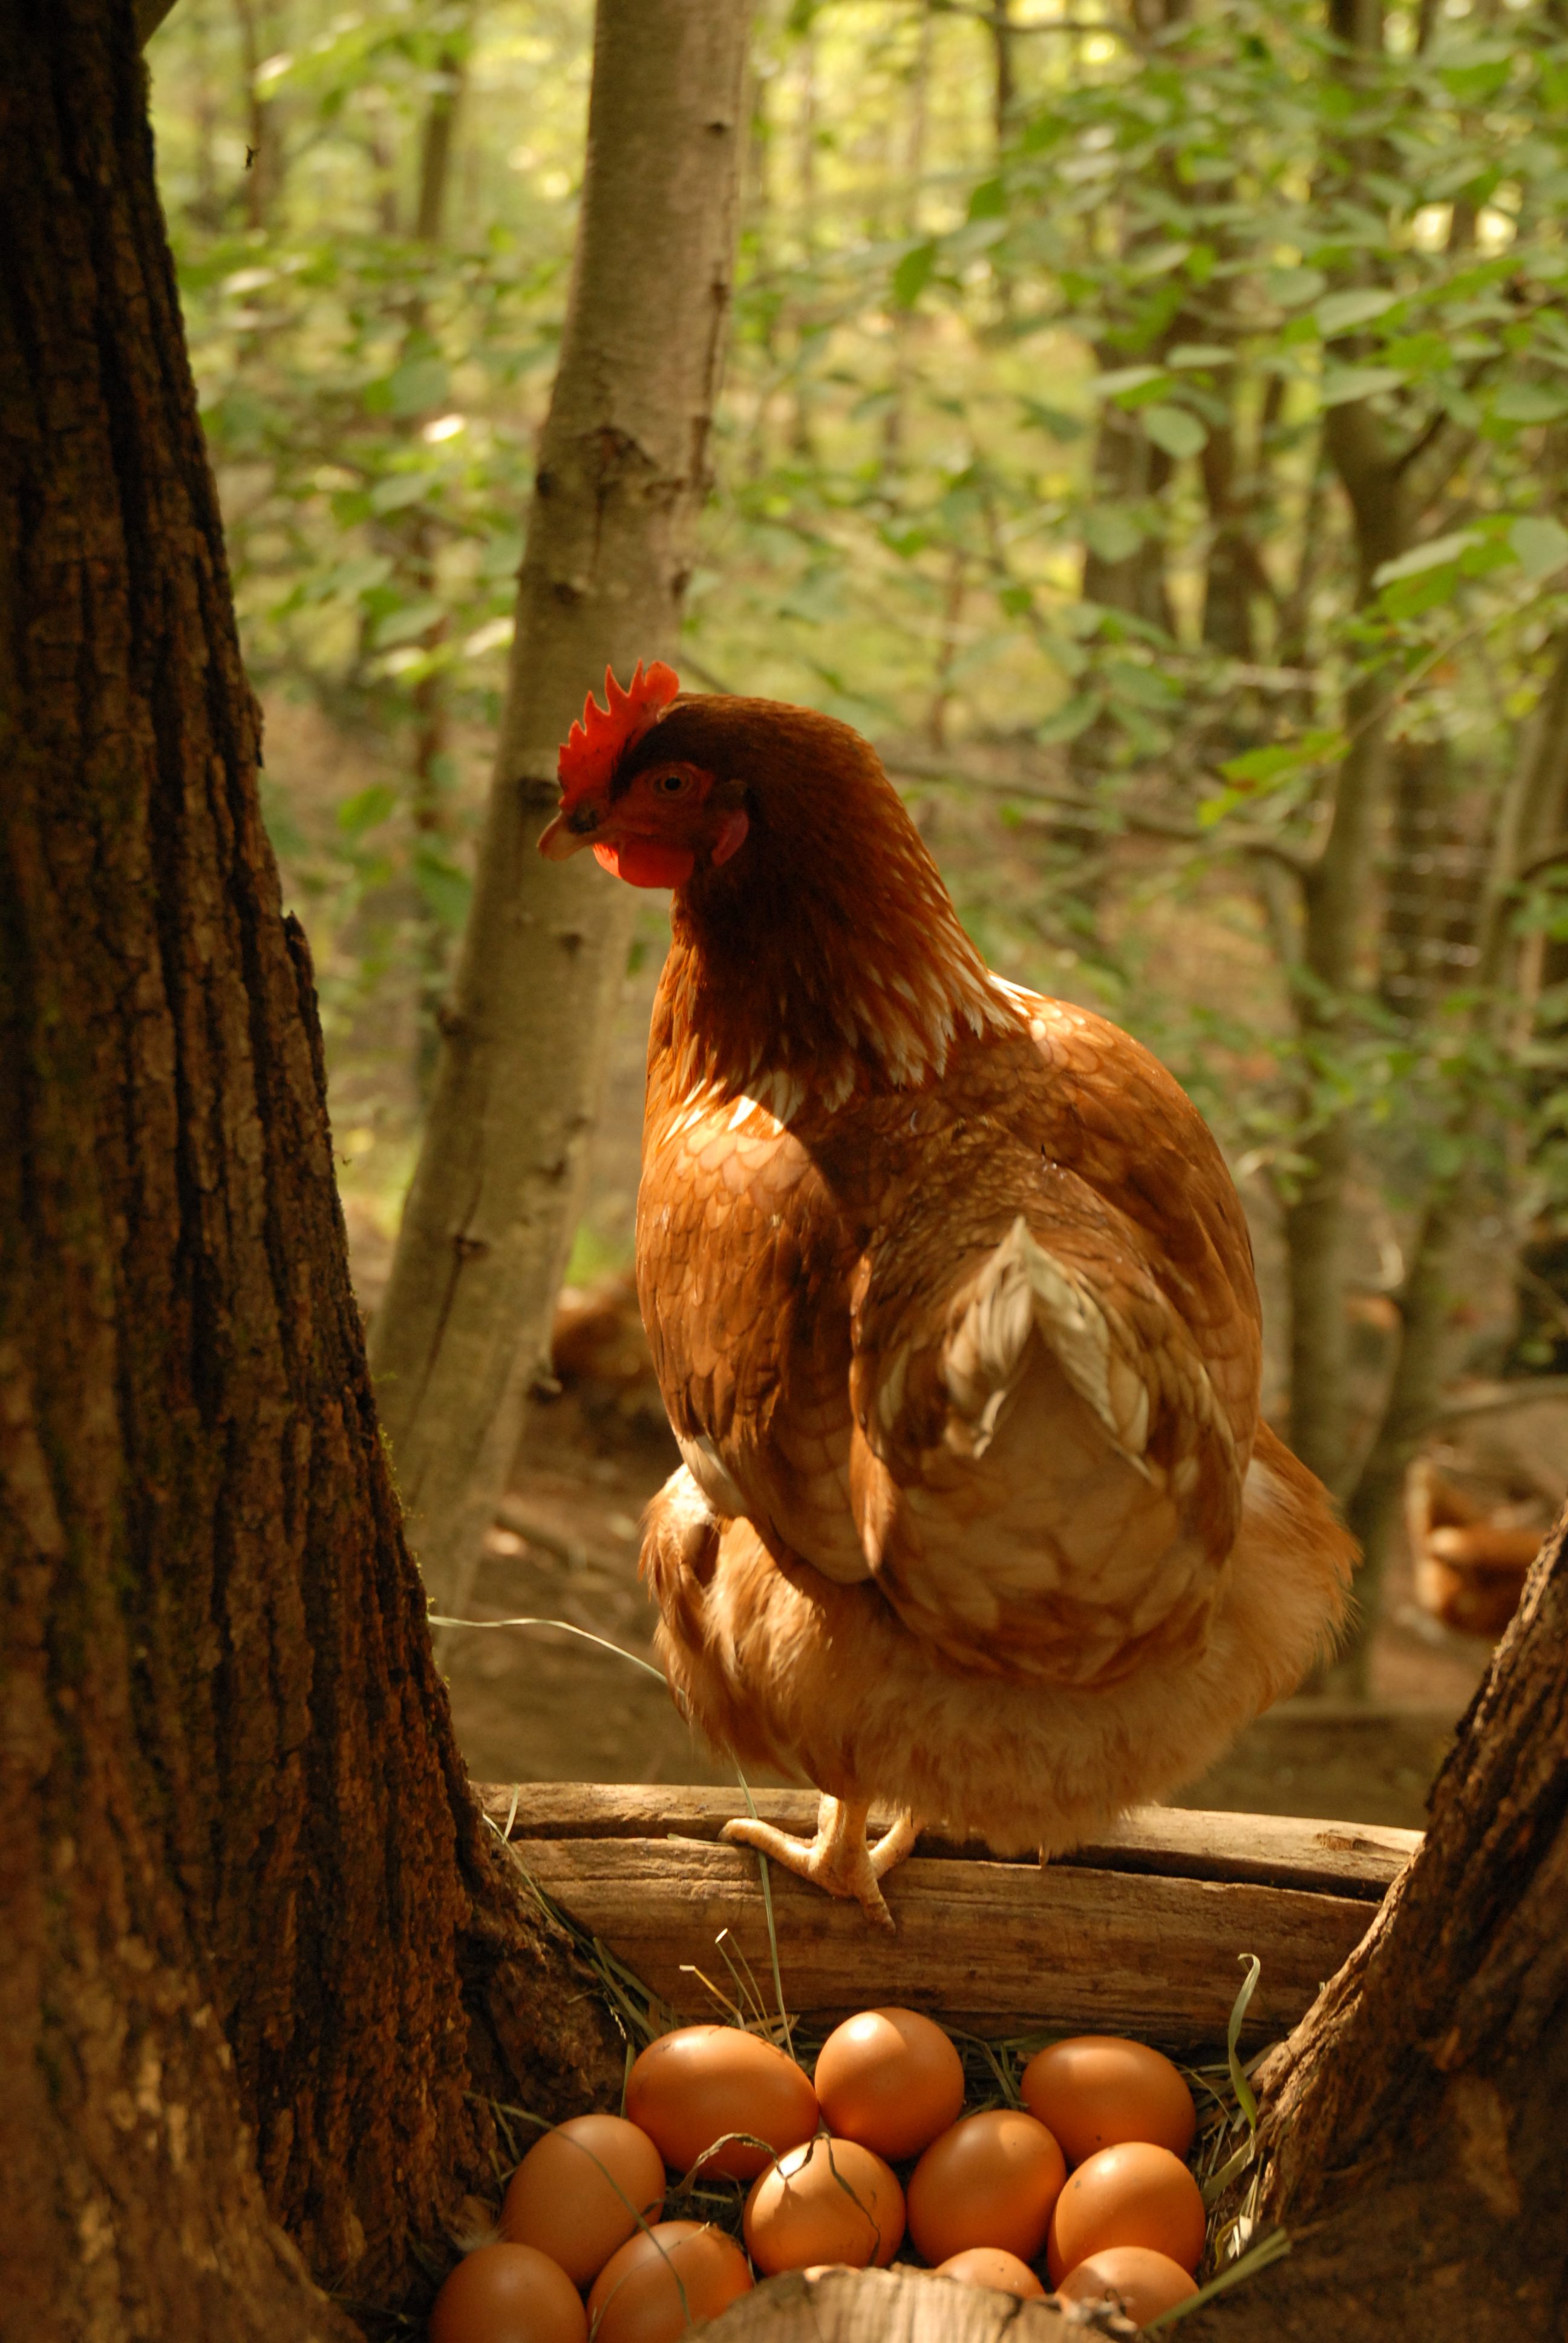 拉佩拉發現把雞放養後看起來更健康了——羽毛發亮，肉垂鮮豔—— 而且生出來的雞蛋味道也更美味。